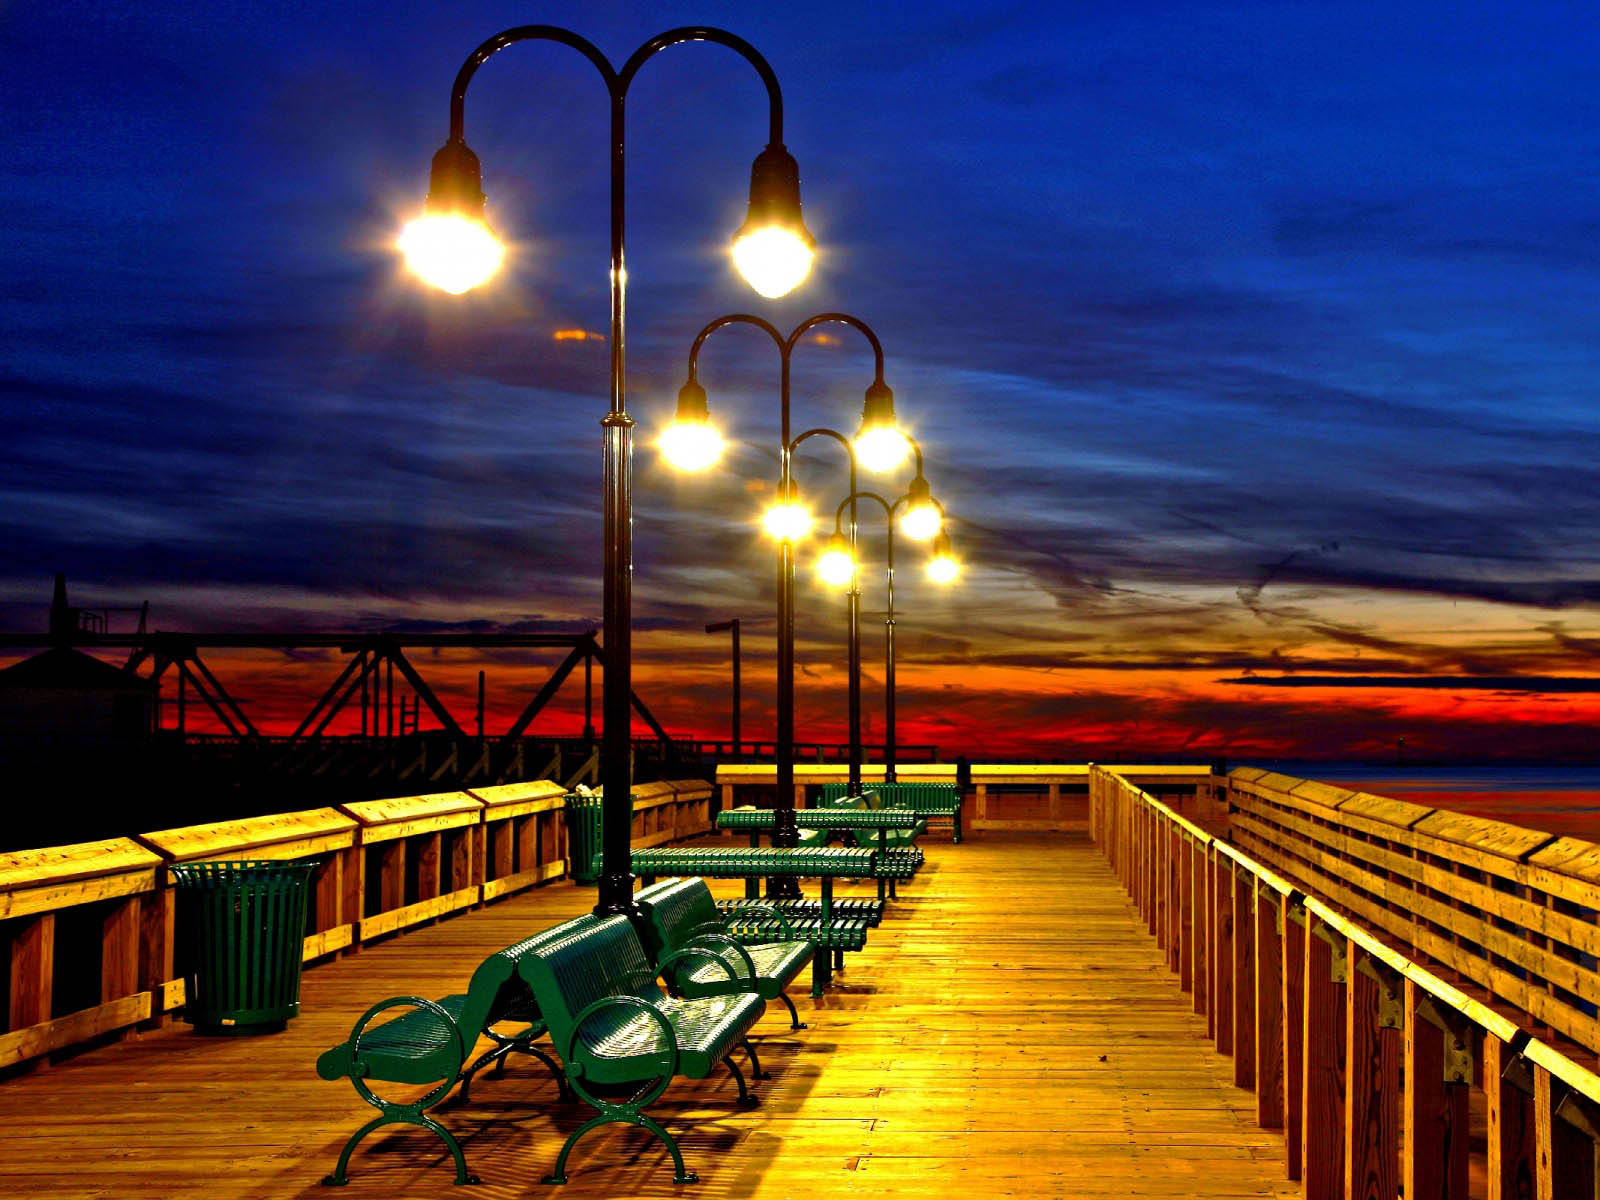 wallpaper romantis,sky,lighting,street light,evening,boardwalk